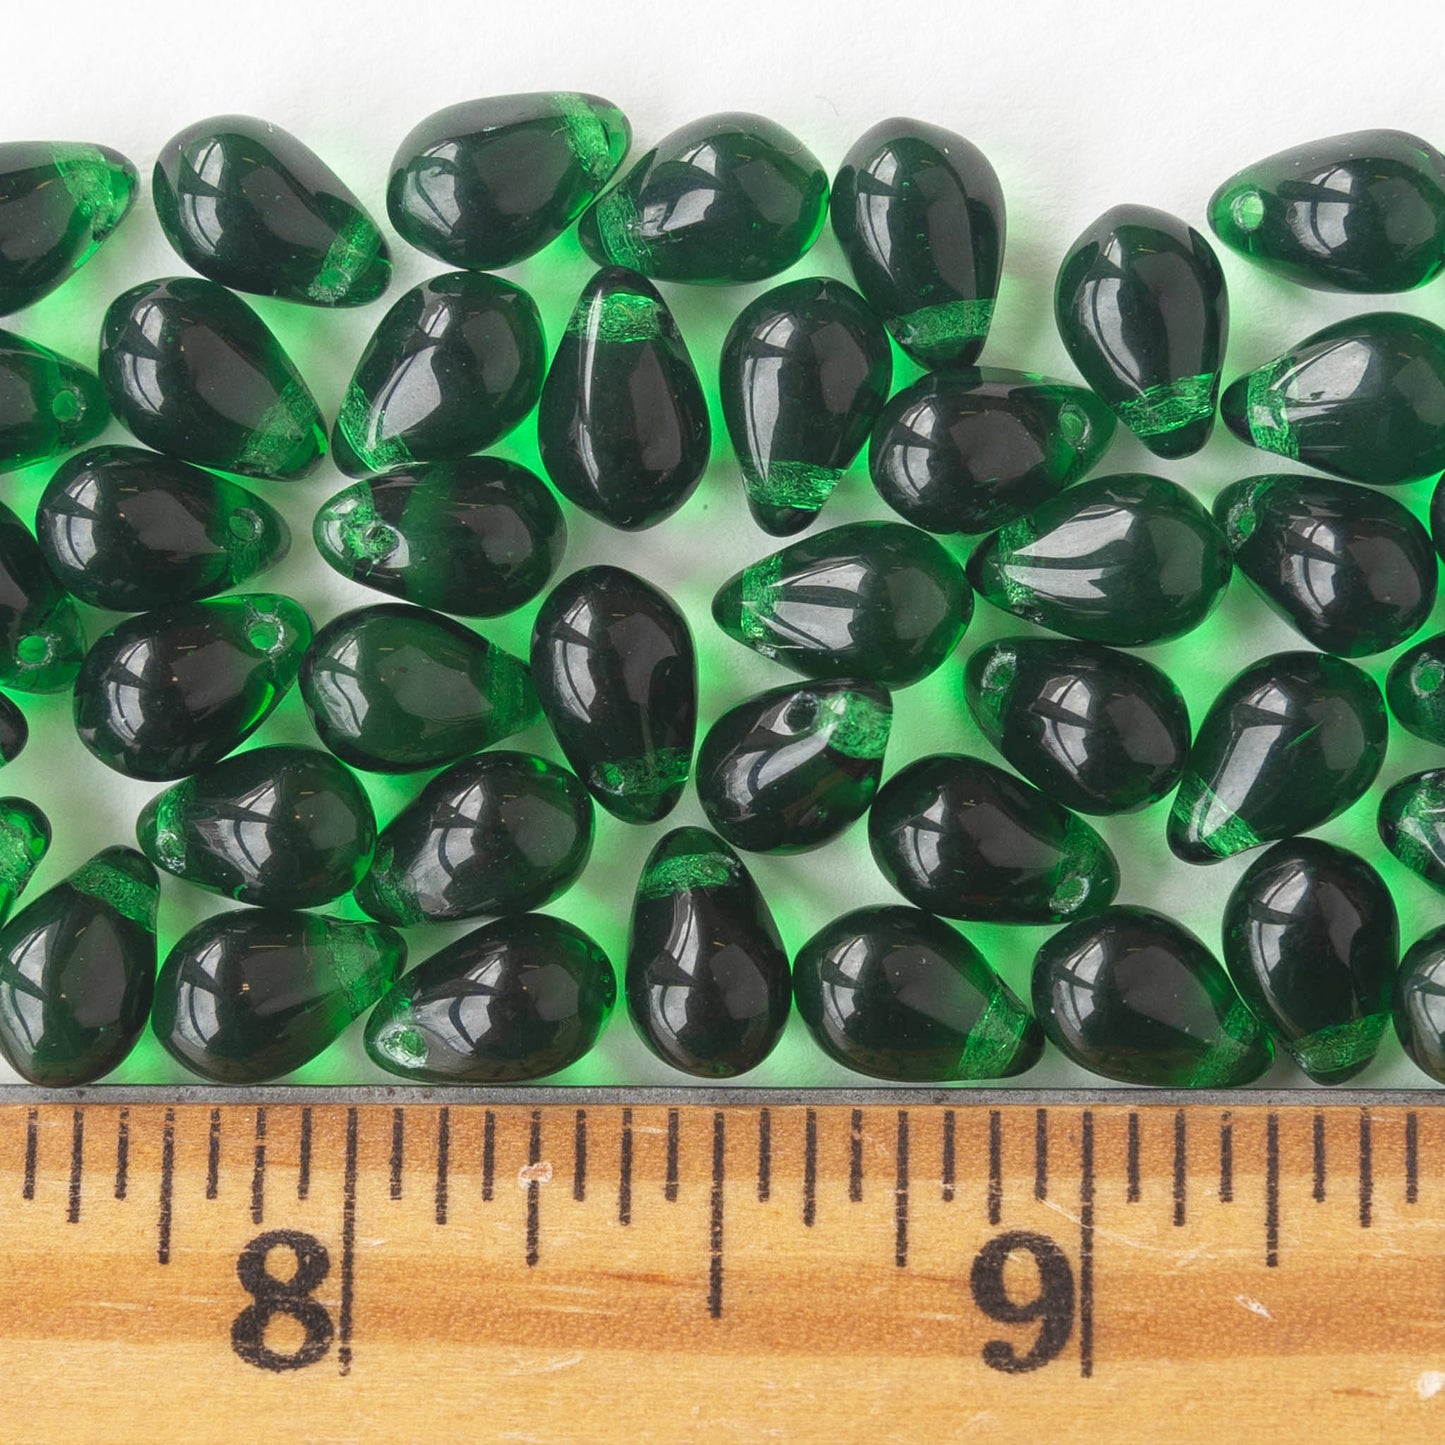 6x9mm Glass Teardrop Beads - Emerald Green - 50 Beads